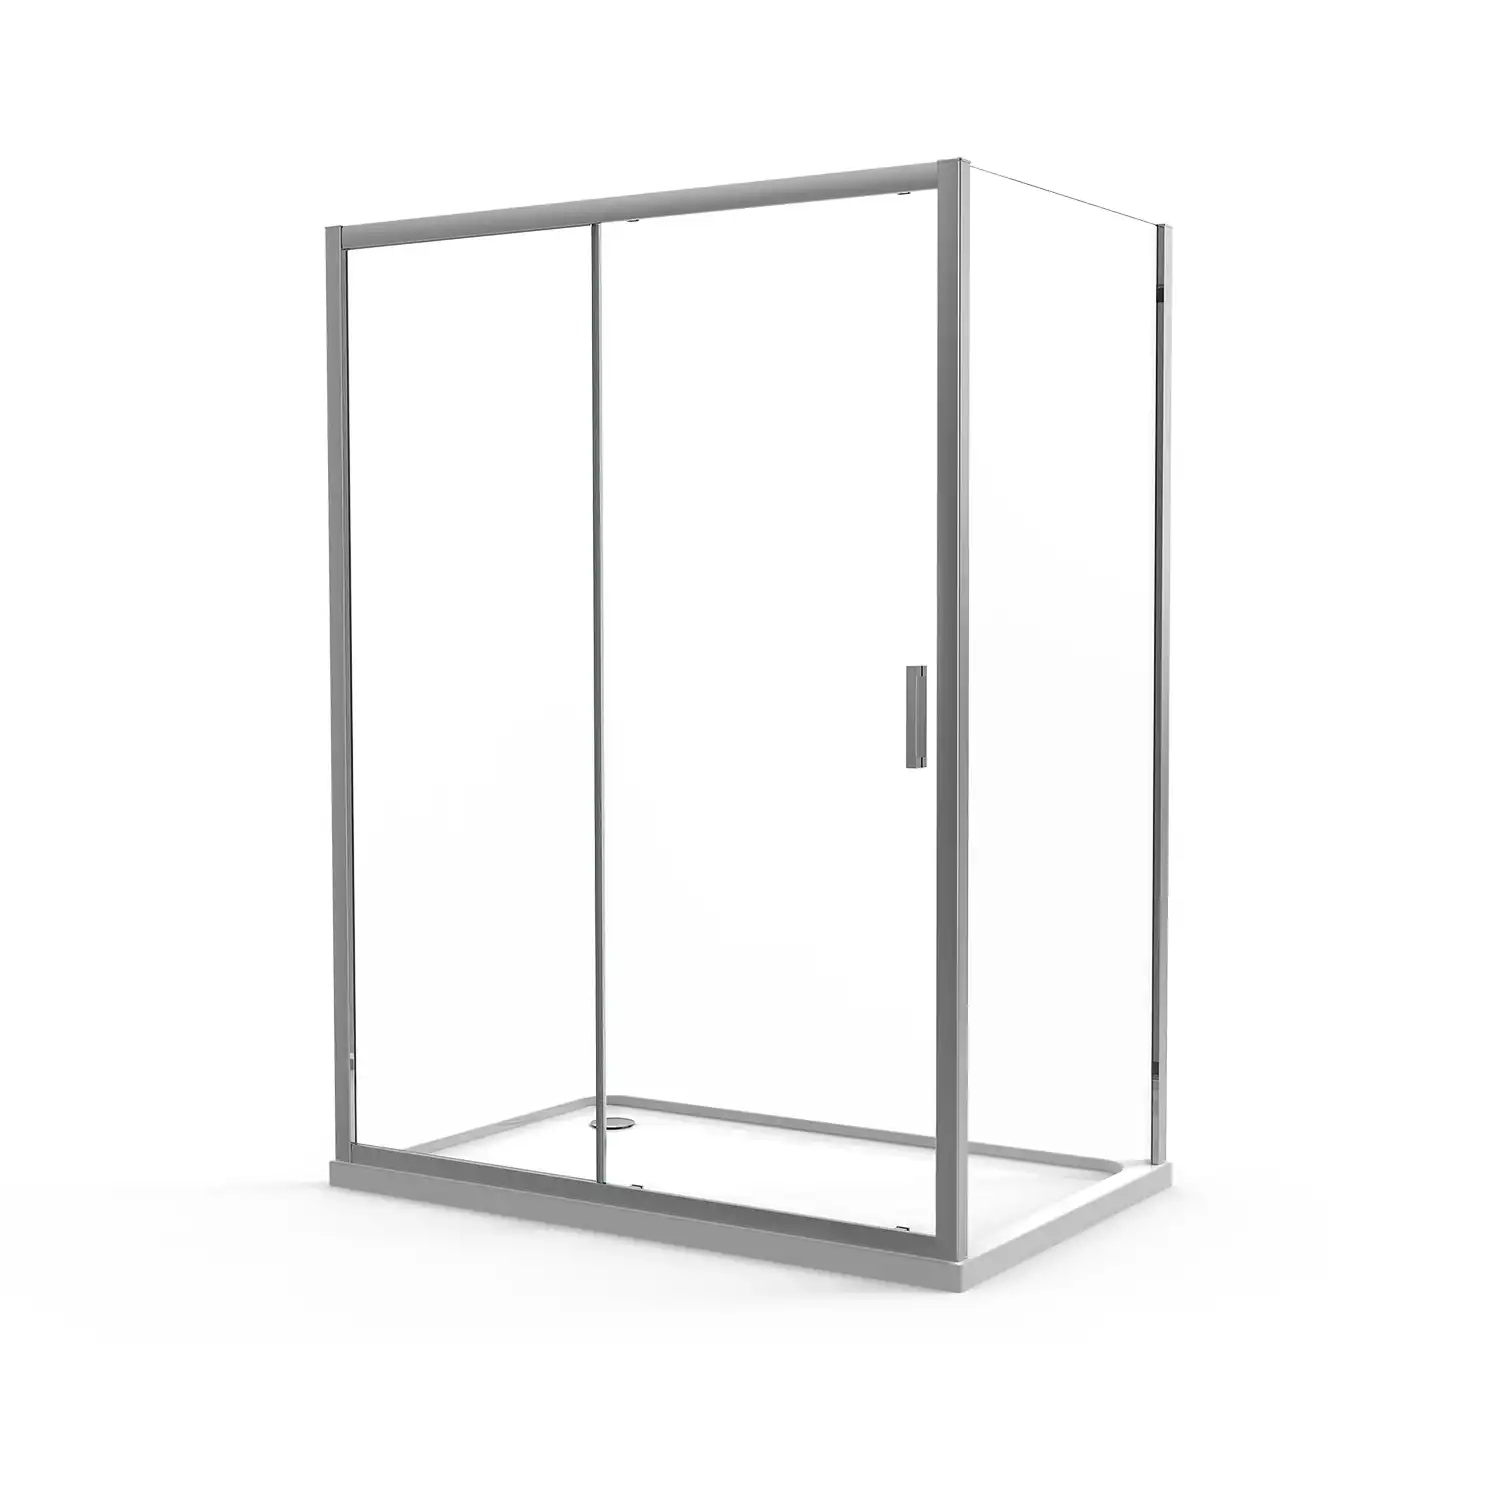 Box doccia angolare 70x140 cm in cristallo trasparente, con apertura 1 anta scorrevole e parete fissa | Vinagra